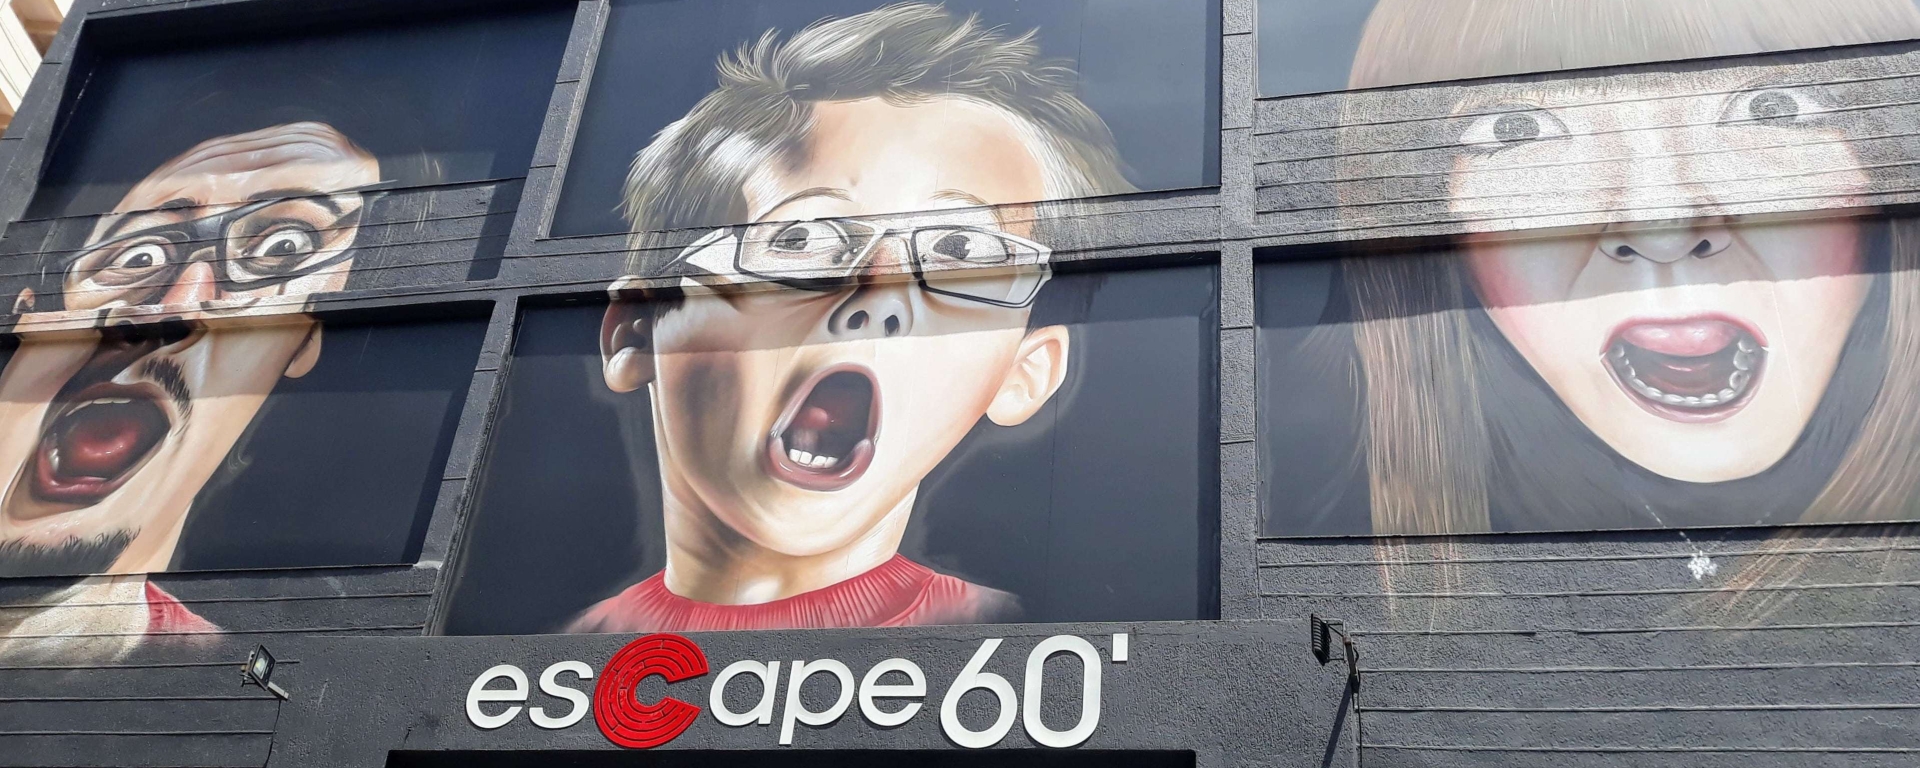 Escape 60' - Aceita o desafio?